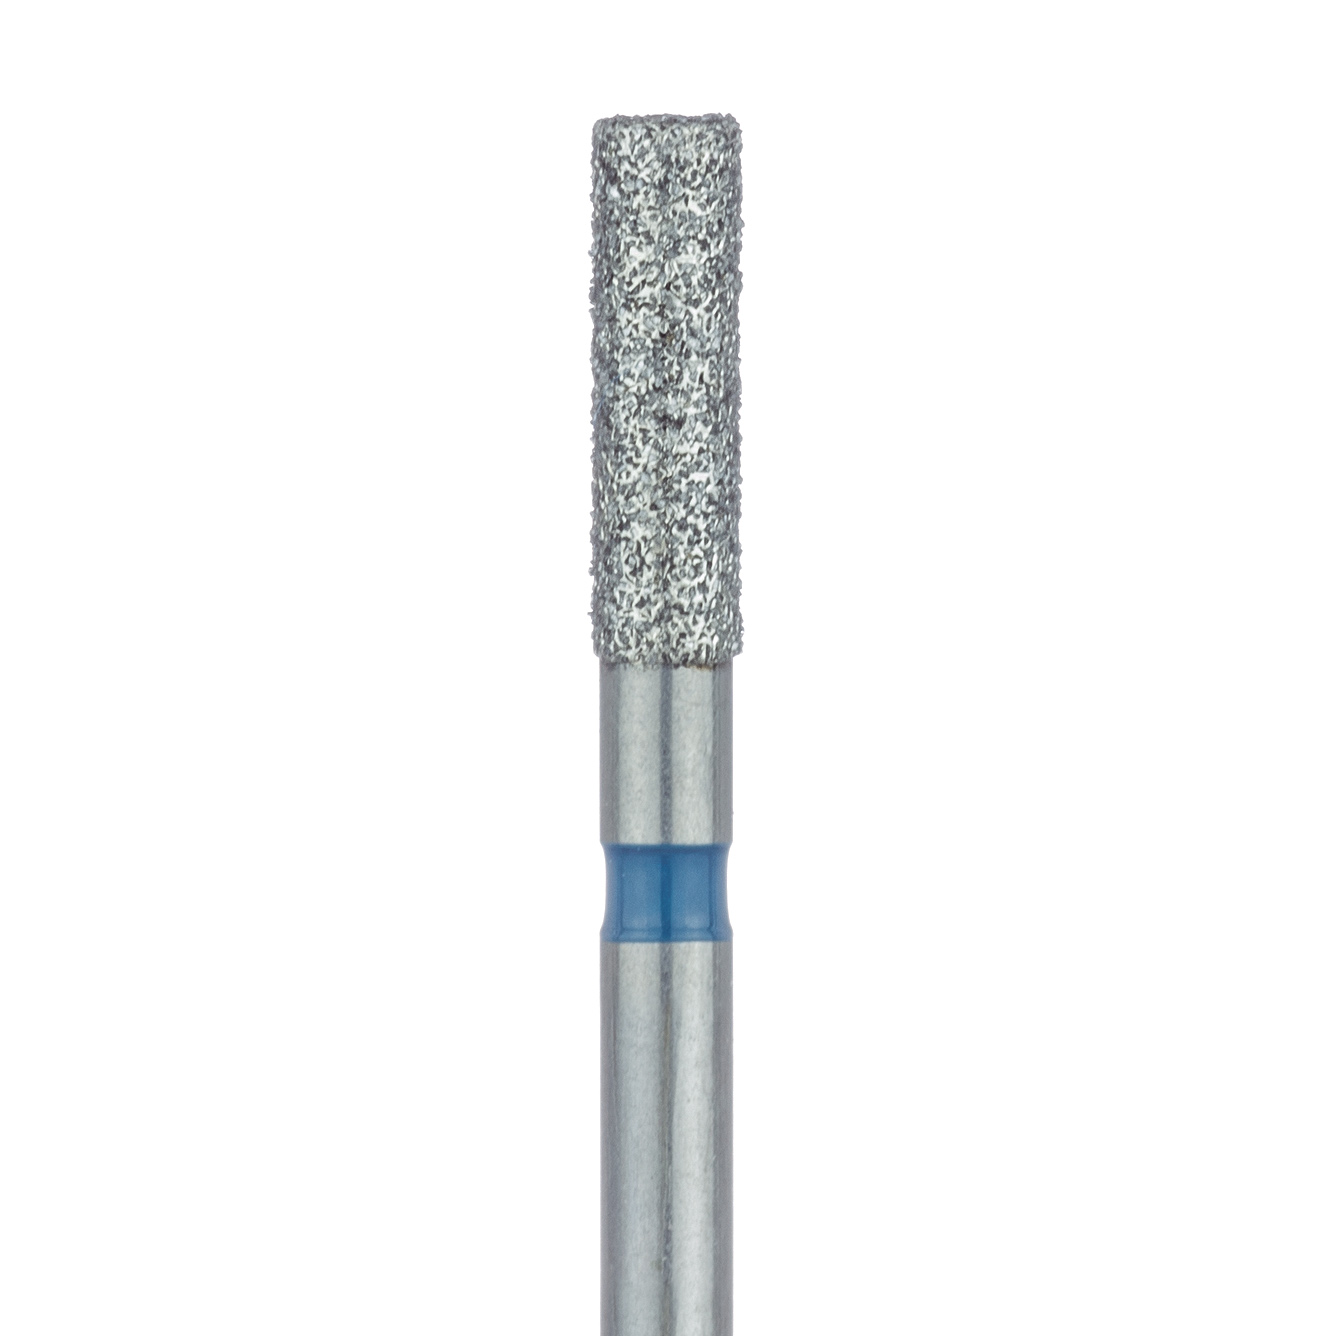 837-018-FG Long Cylinder Diamond Bur, 1.8mm Ø, Medium, FG